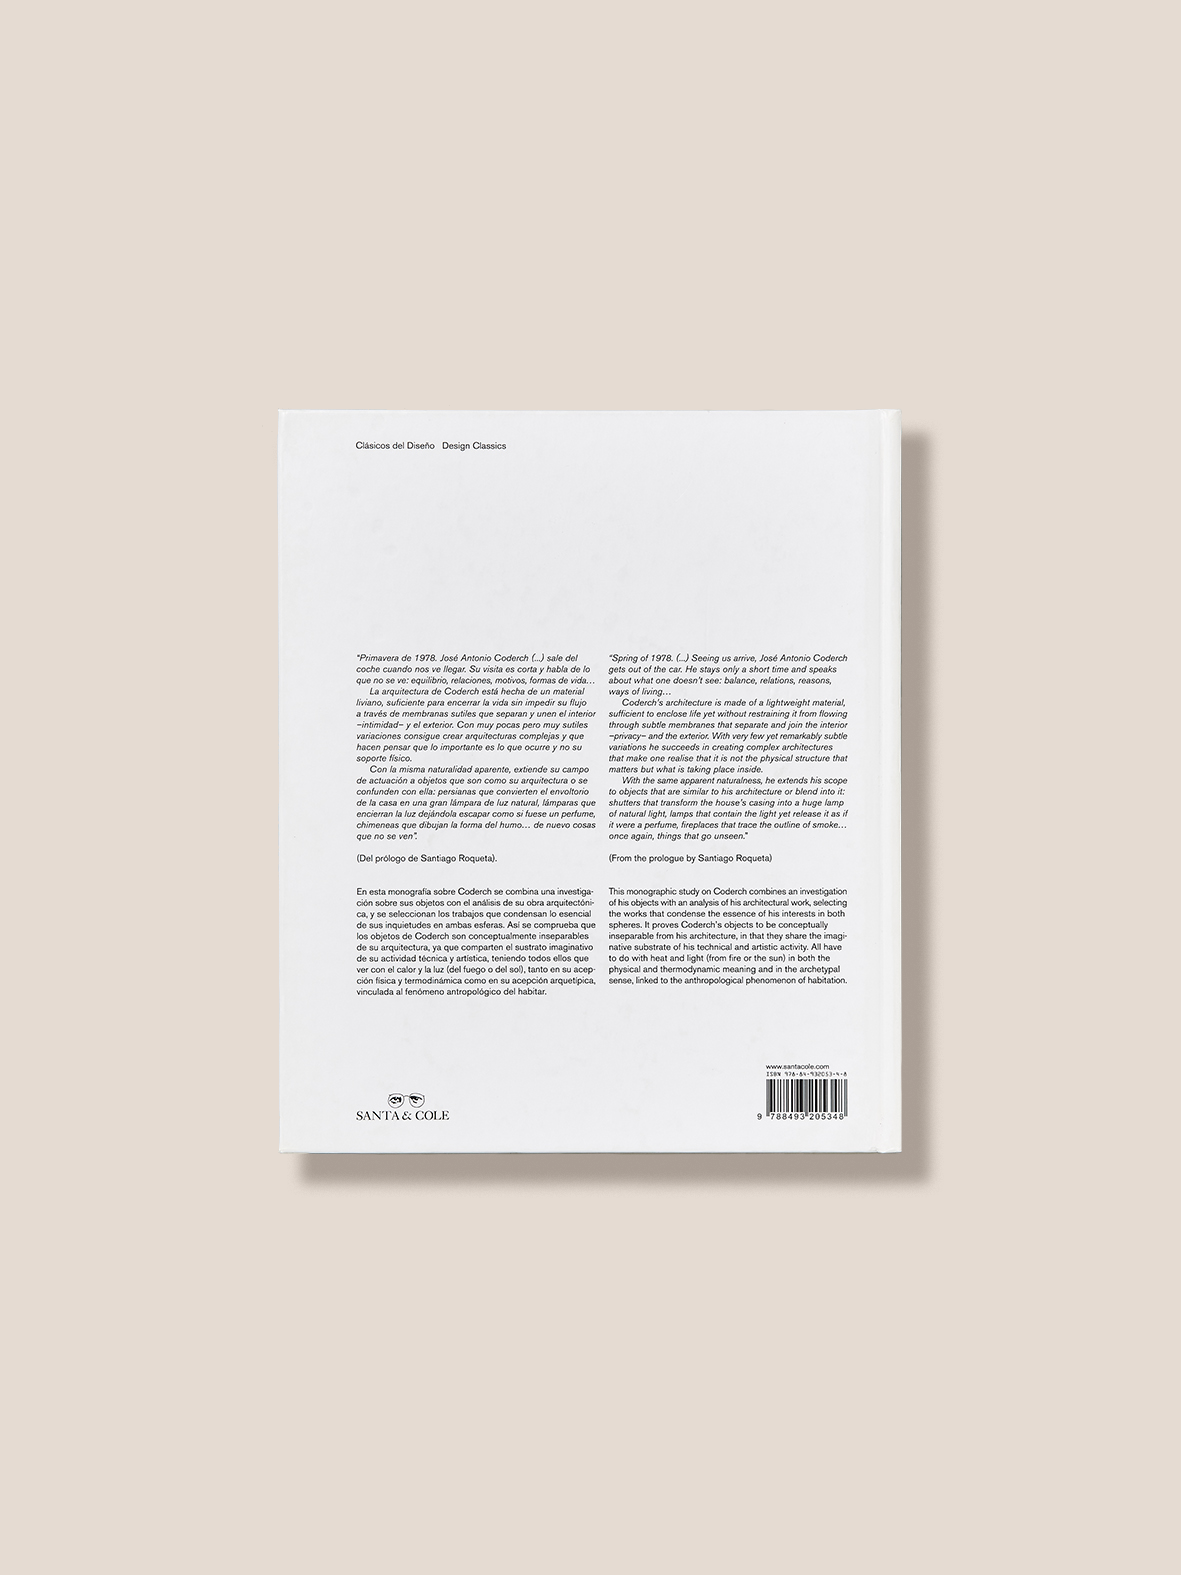 JOSÉ ANTONIO CODERCH - Design Biography Book by Antonio Armesto & Rafael Diez